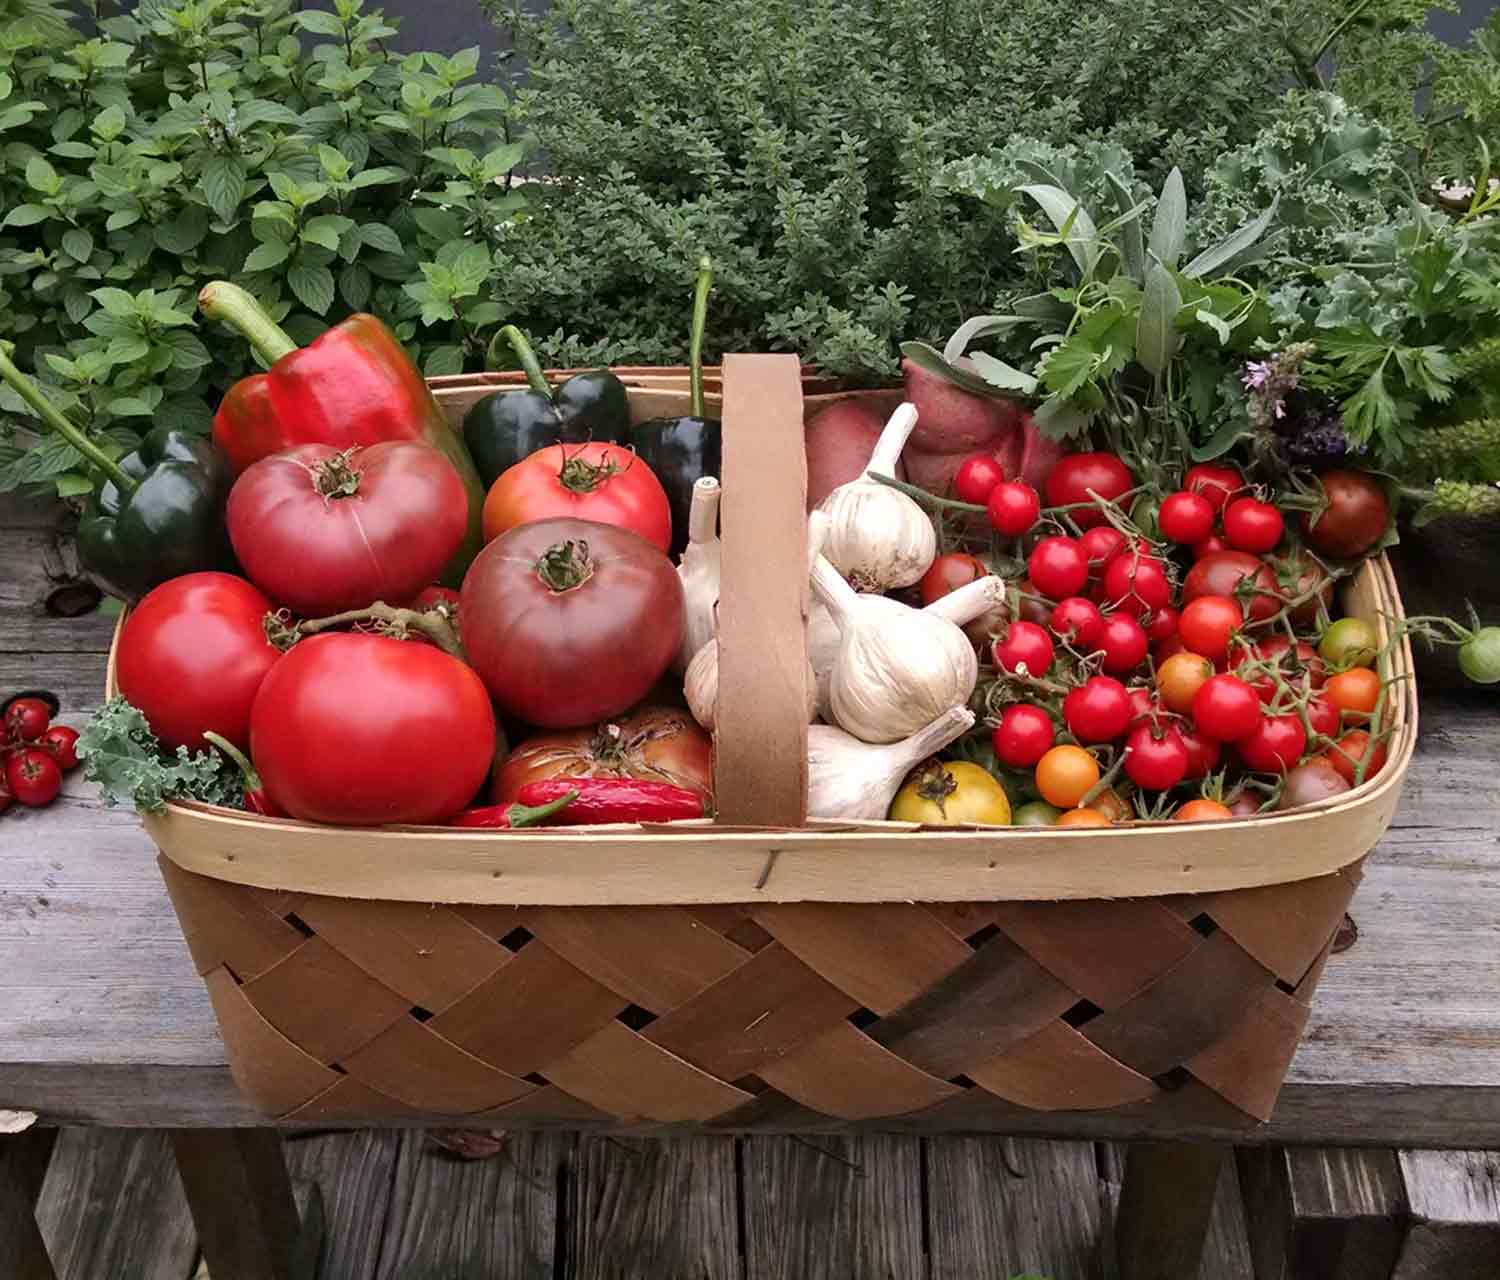 Basket of freshly harvested homegrown vegetables.